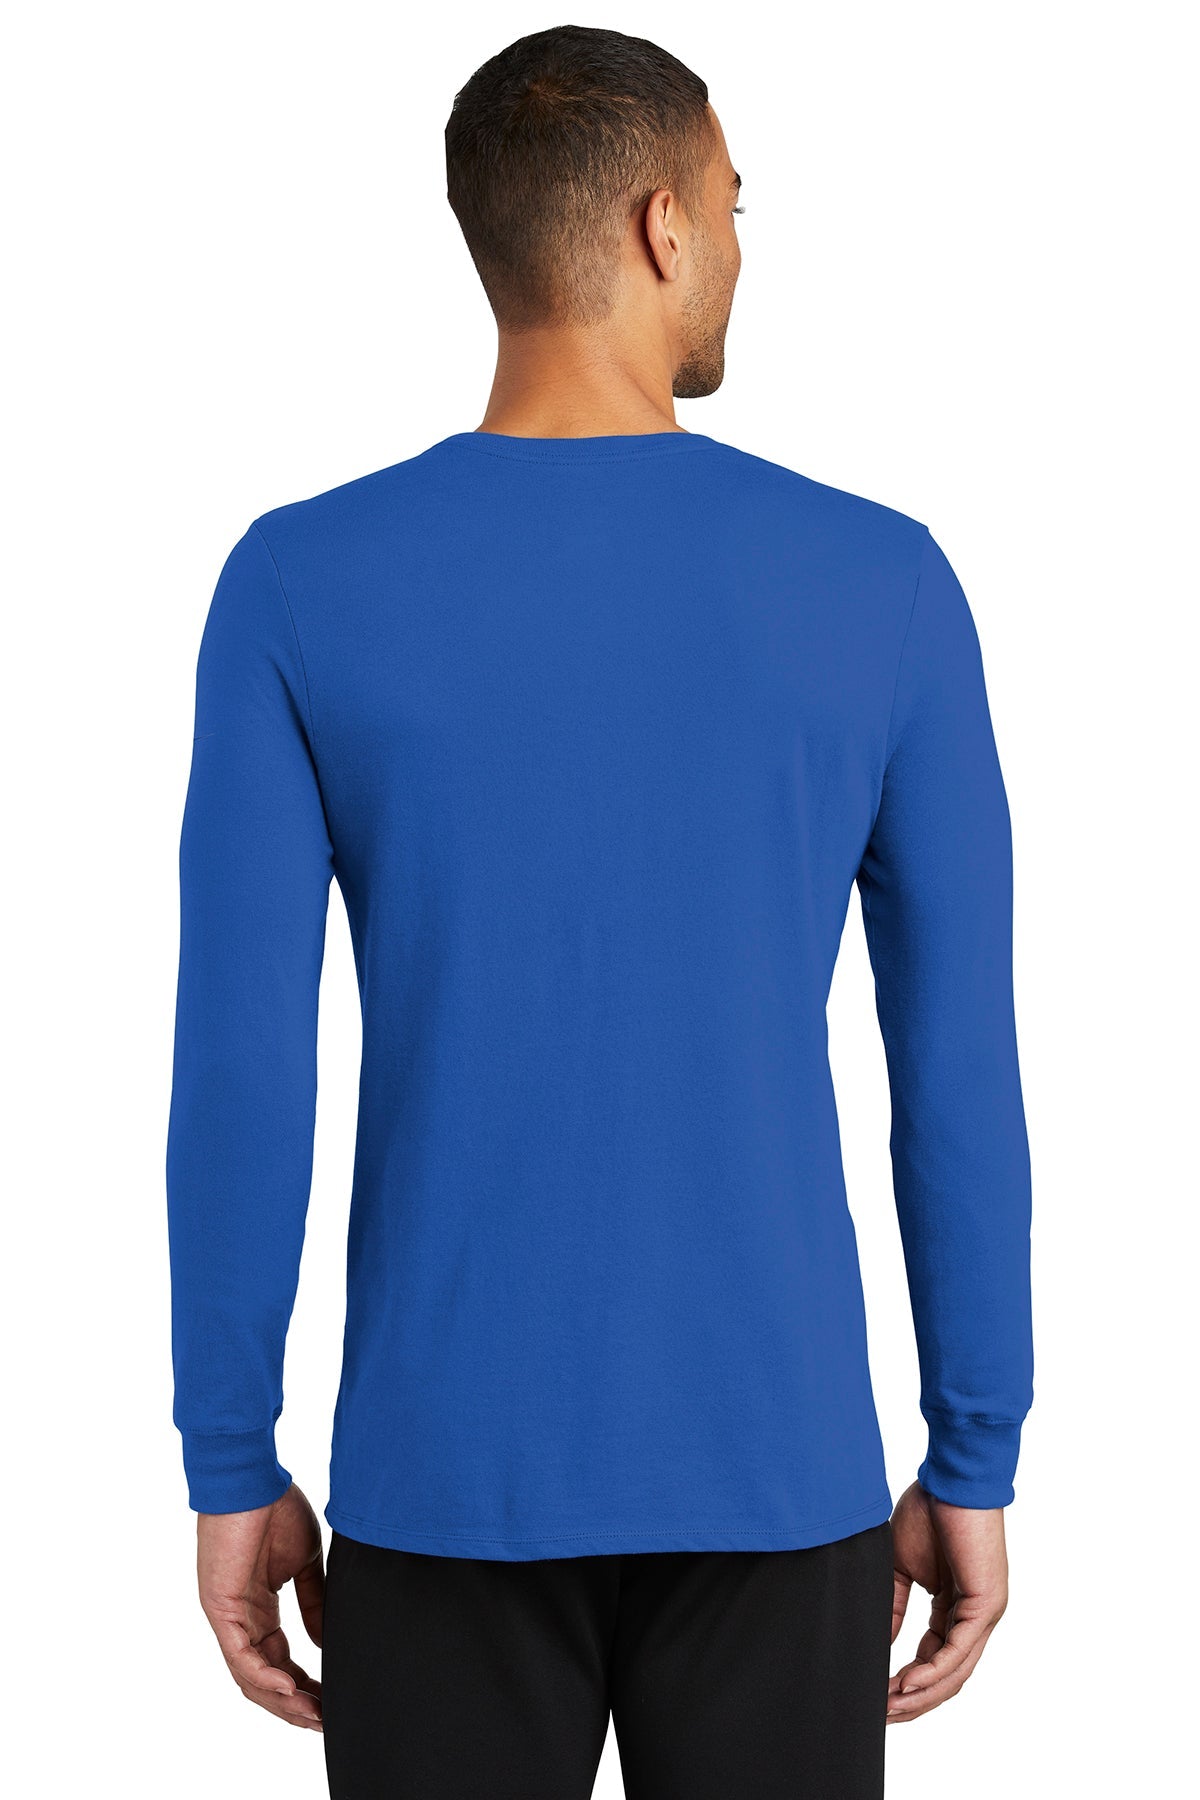 nike-dri-fit-cotton-poly-long-sleeve-tee-nkbq5230-rush-blue